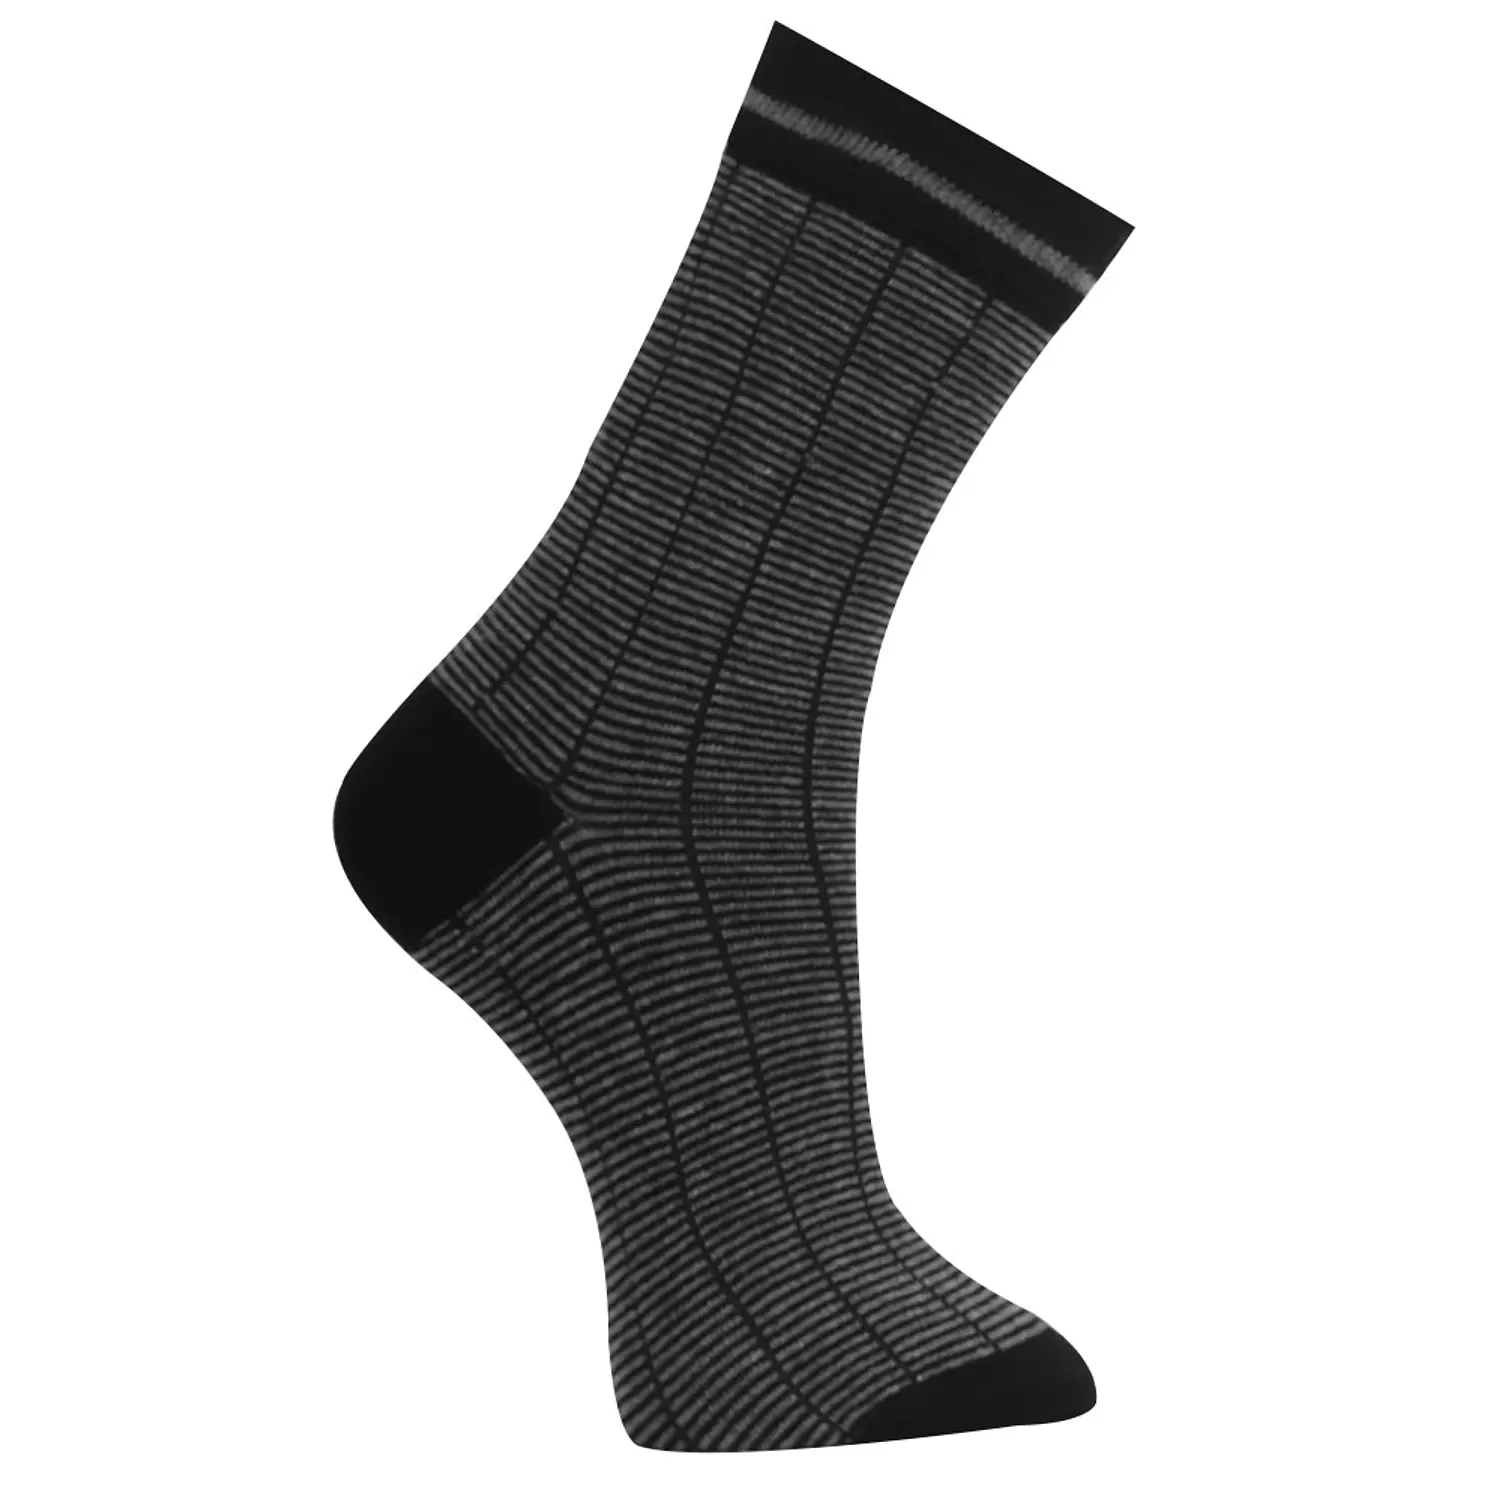  Viva knee high classic Socks hover image